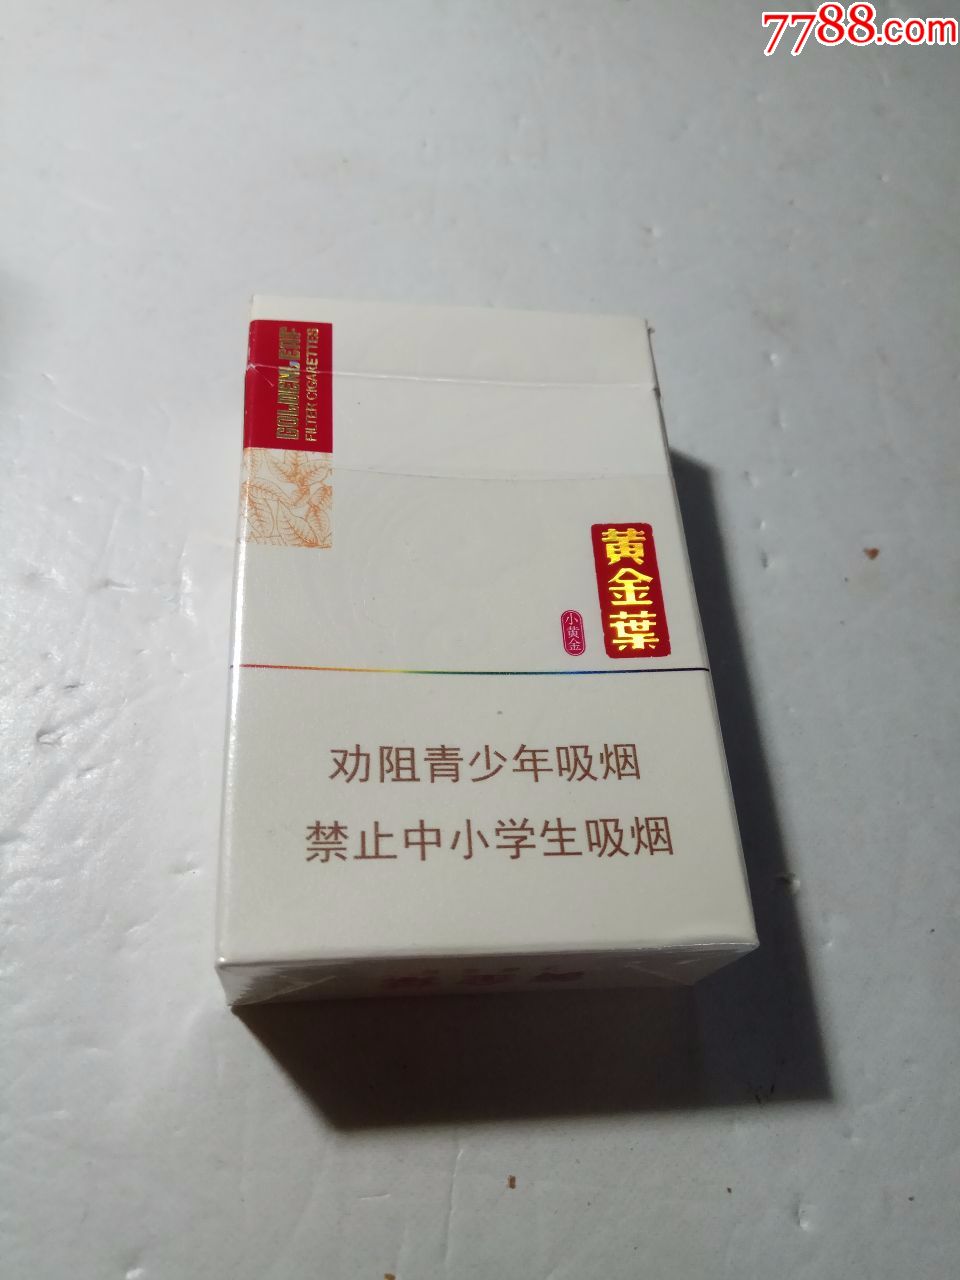 黄金叶,16版,劝阻-se59764100-烟标/烟盒-零售-7788